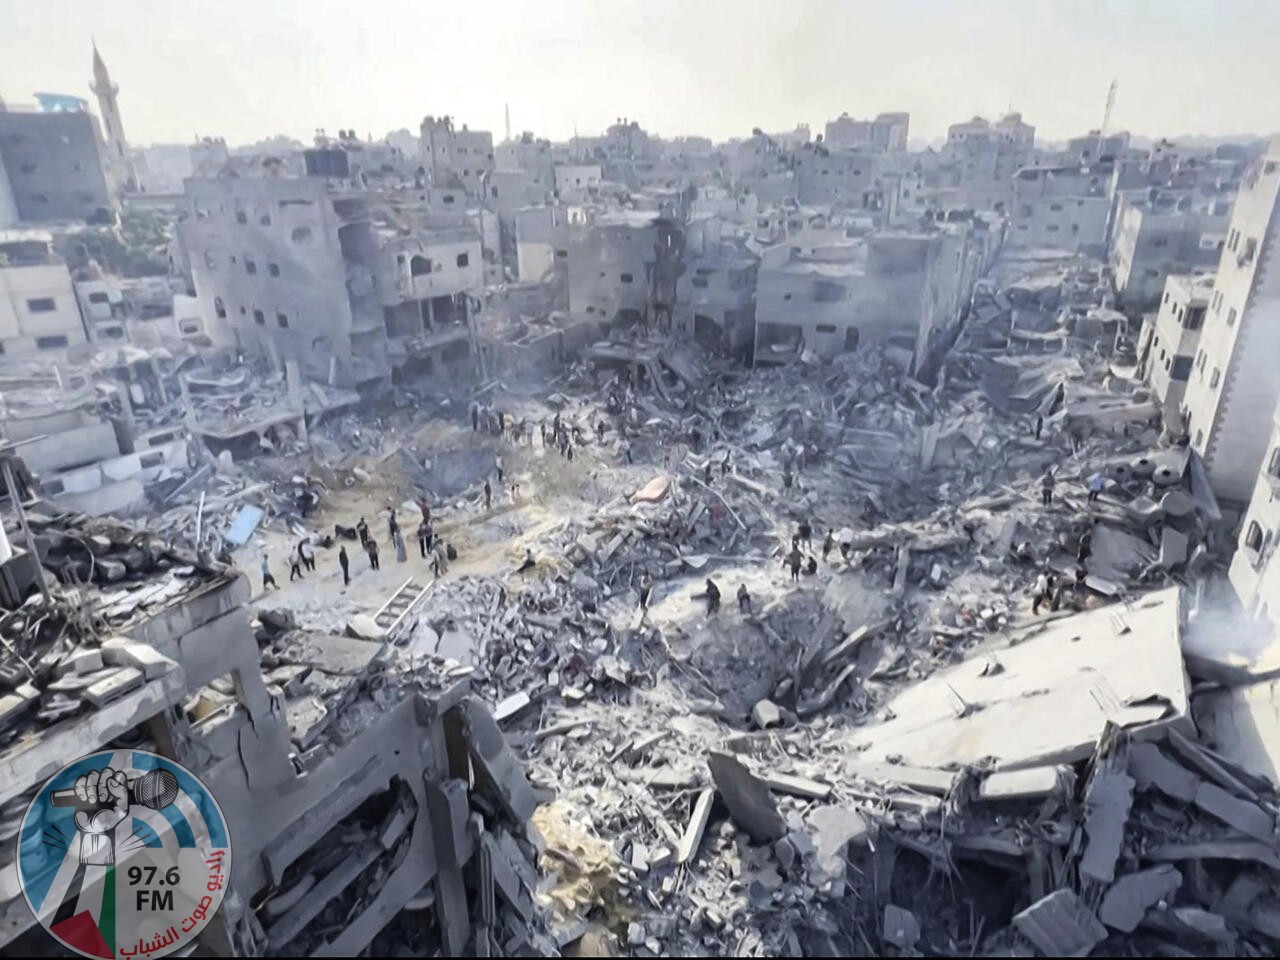 "الأونروا": الحرب الدائرة منذ مئة يوم في غزة "تلطخ إنسانيتنا المشتركة"